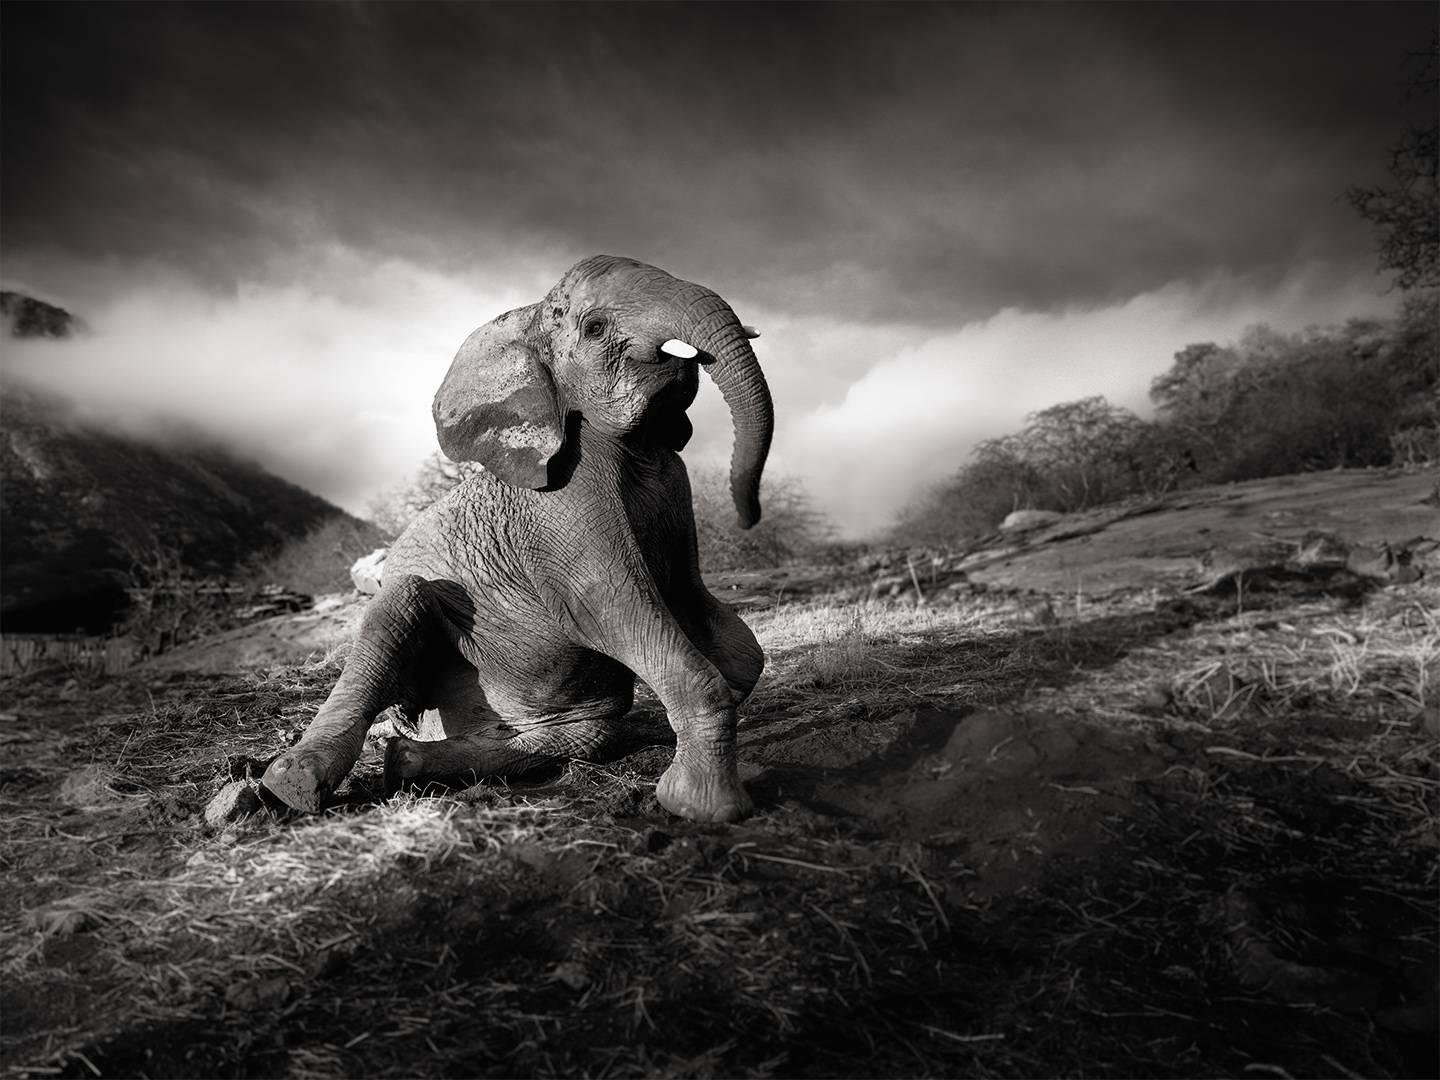 Joachim Schmeisser Black and White Photograph - Wonderful morning, Elephant, black and white photography, wildlife